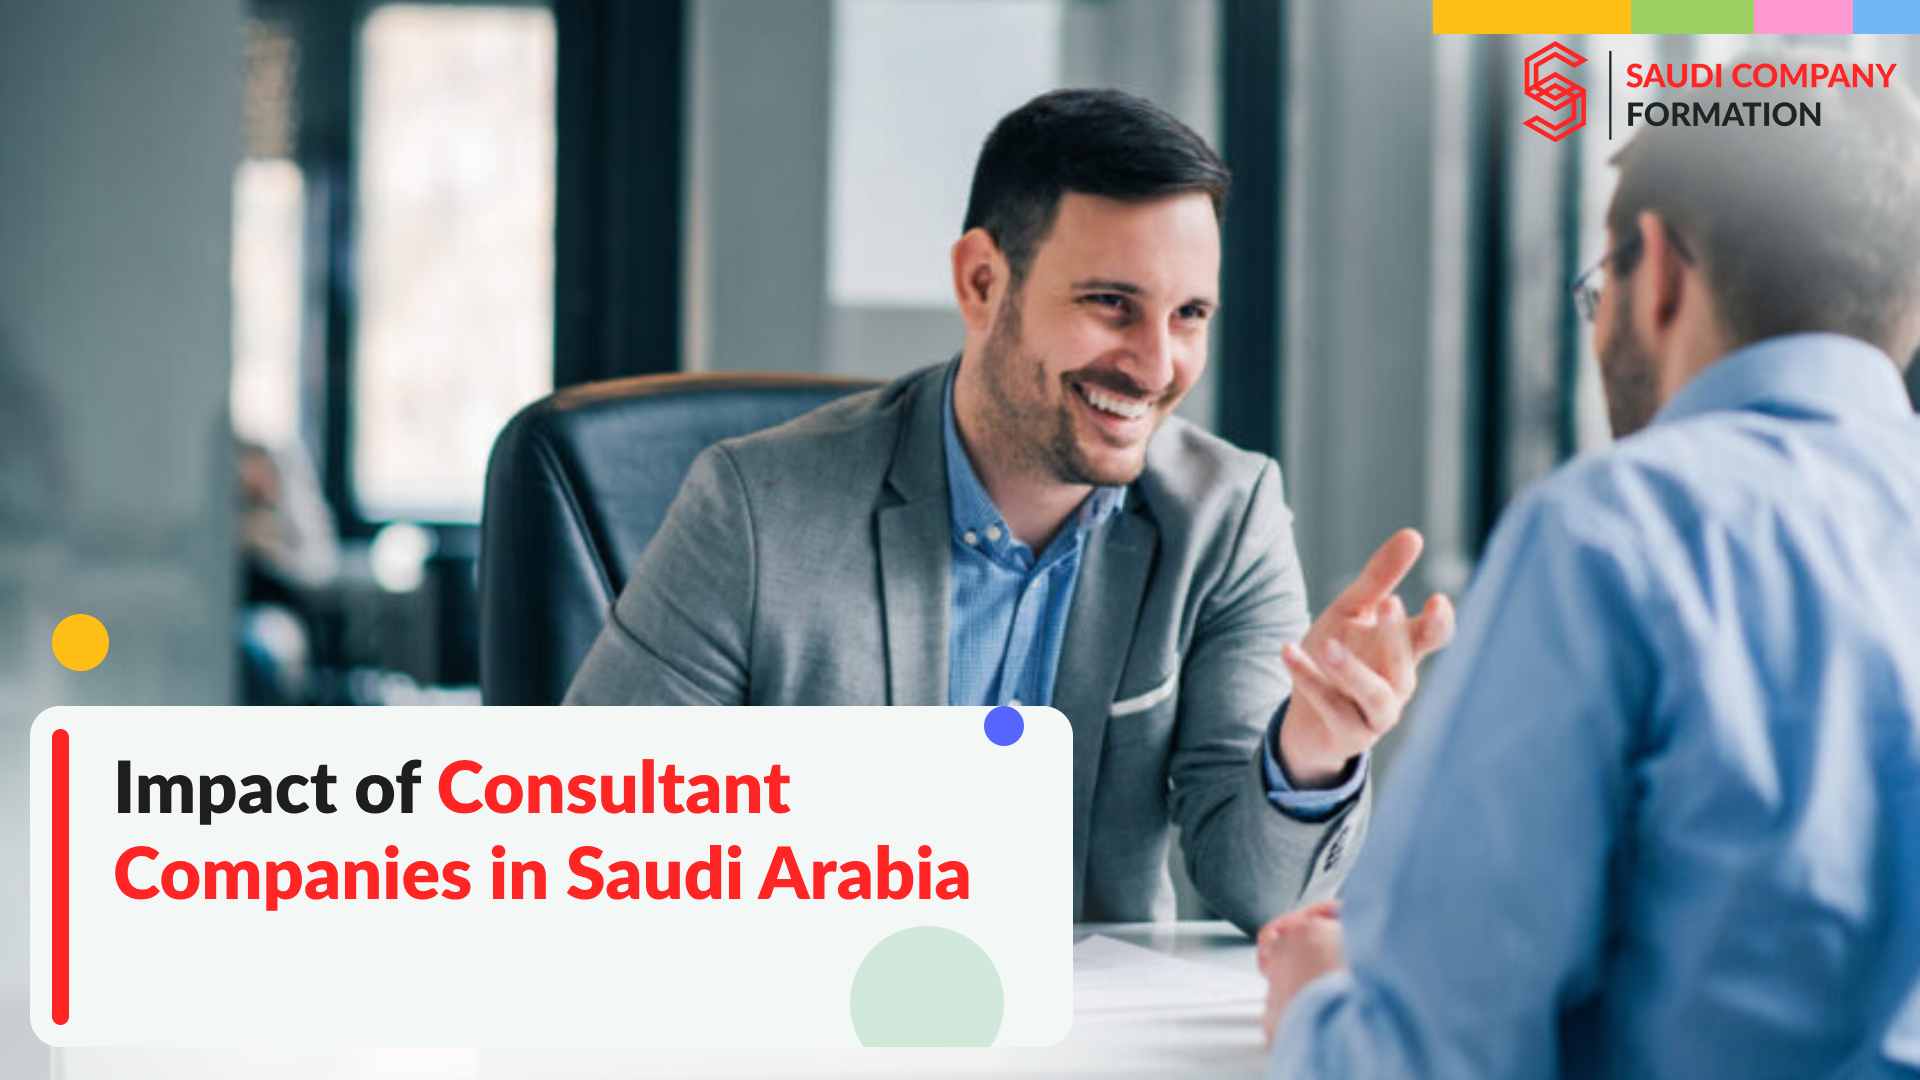 Consultant companies in Saudi Arabia